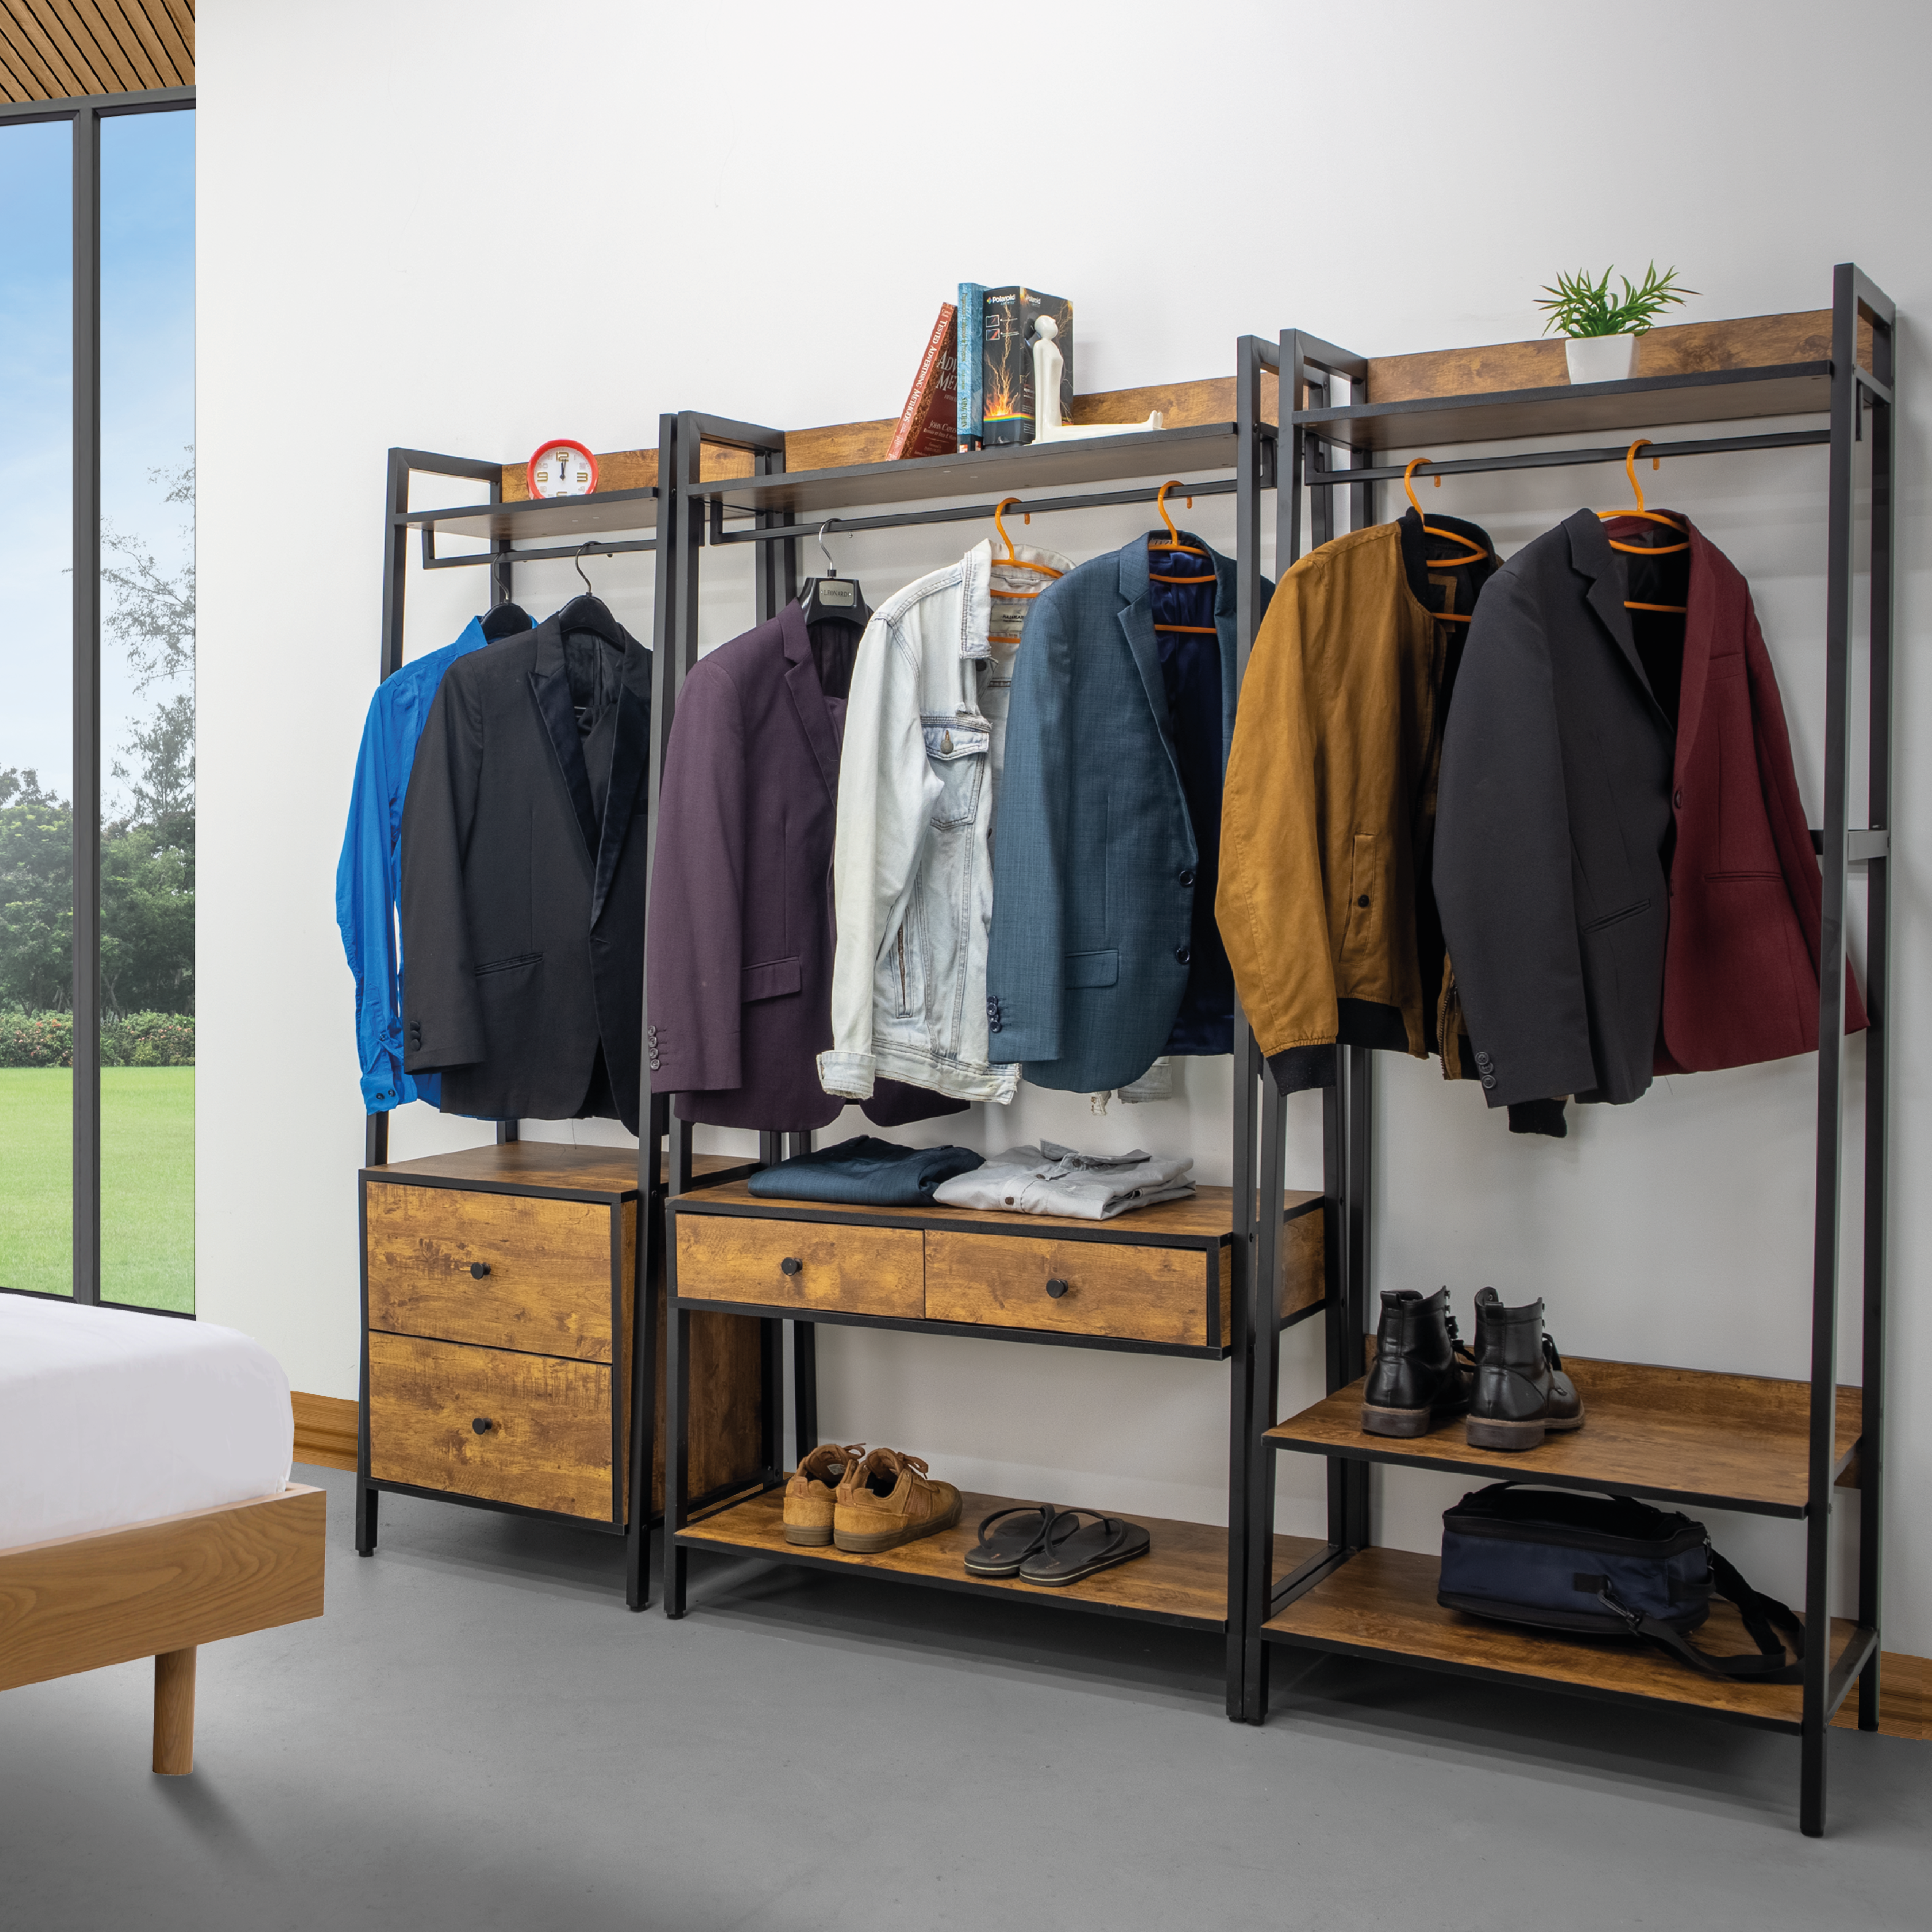 Tendencia en closets minimalistas | Easymart .